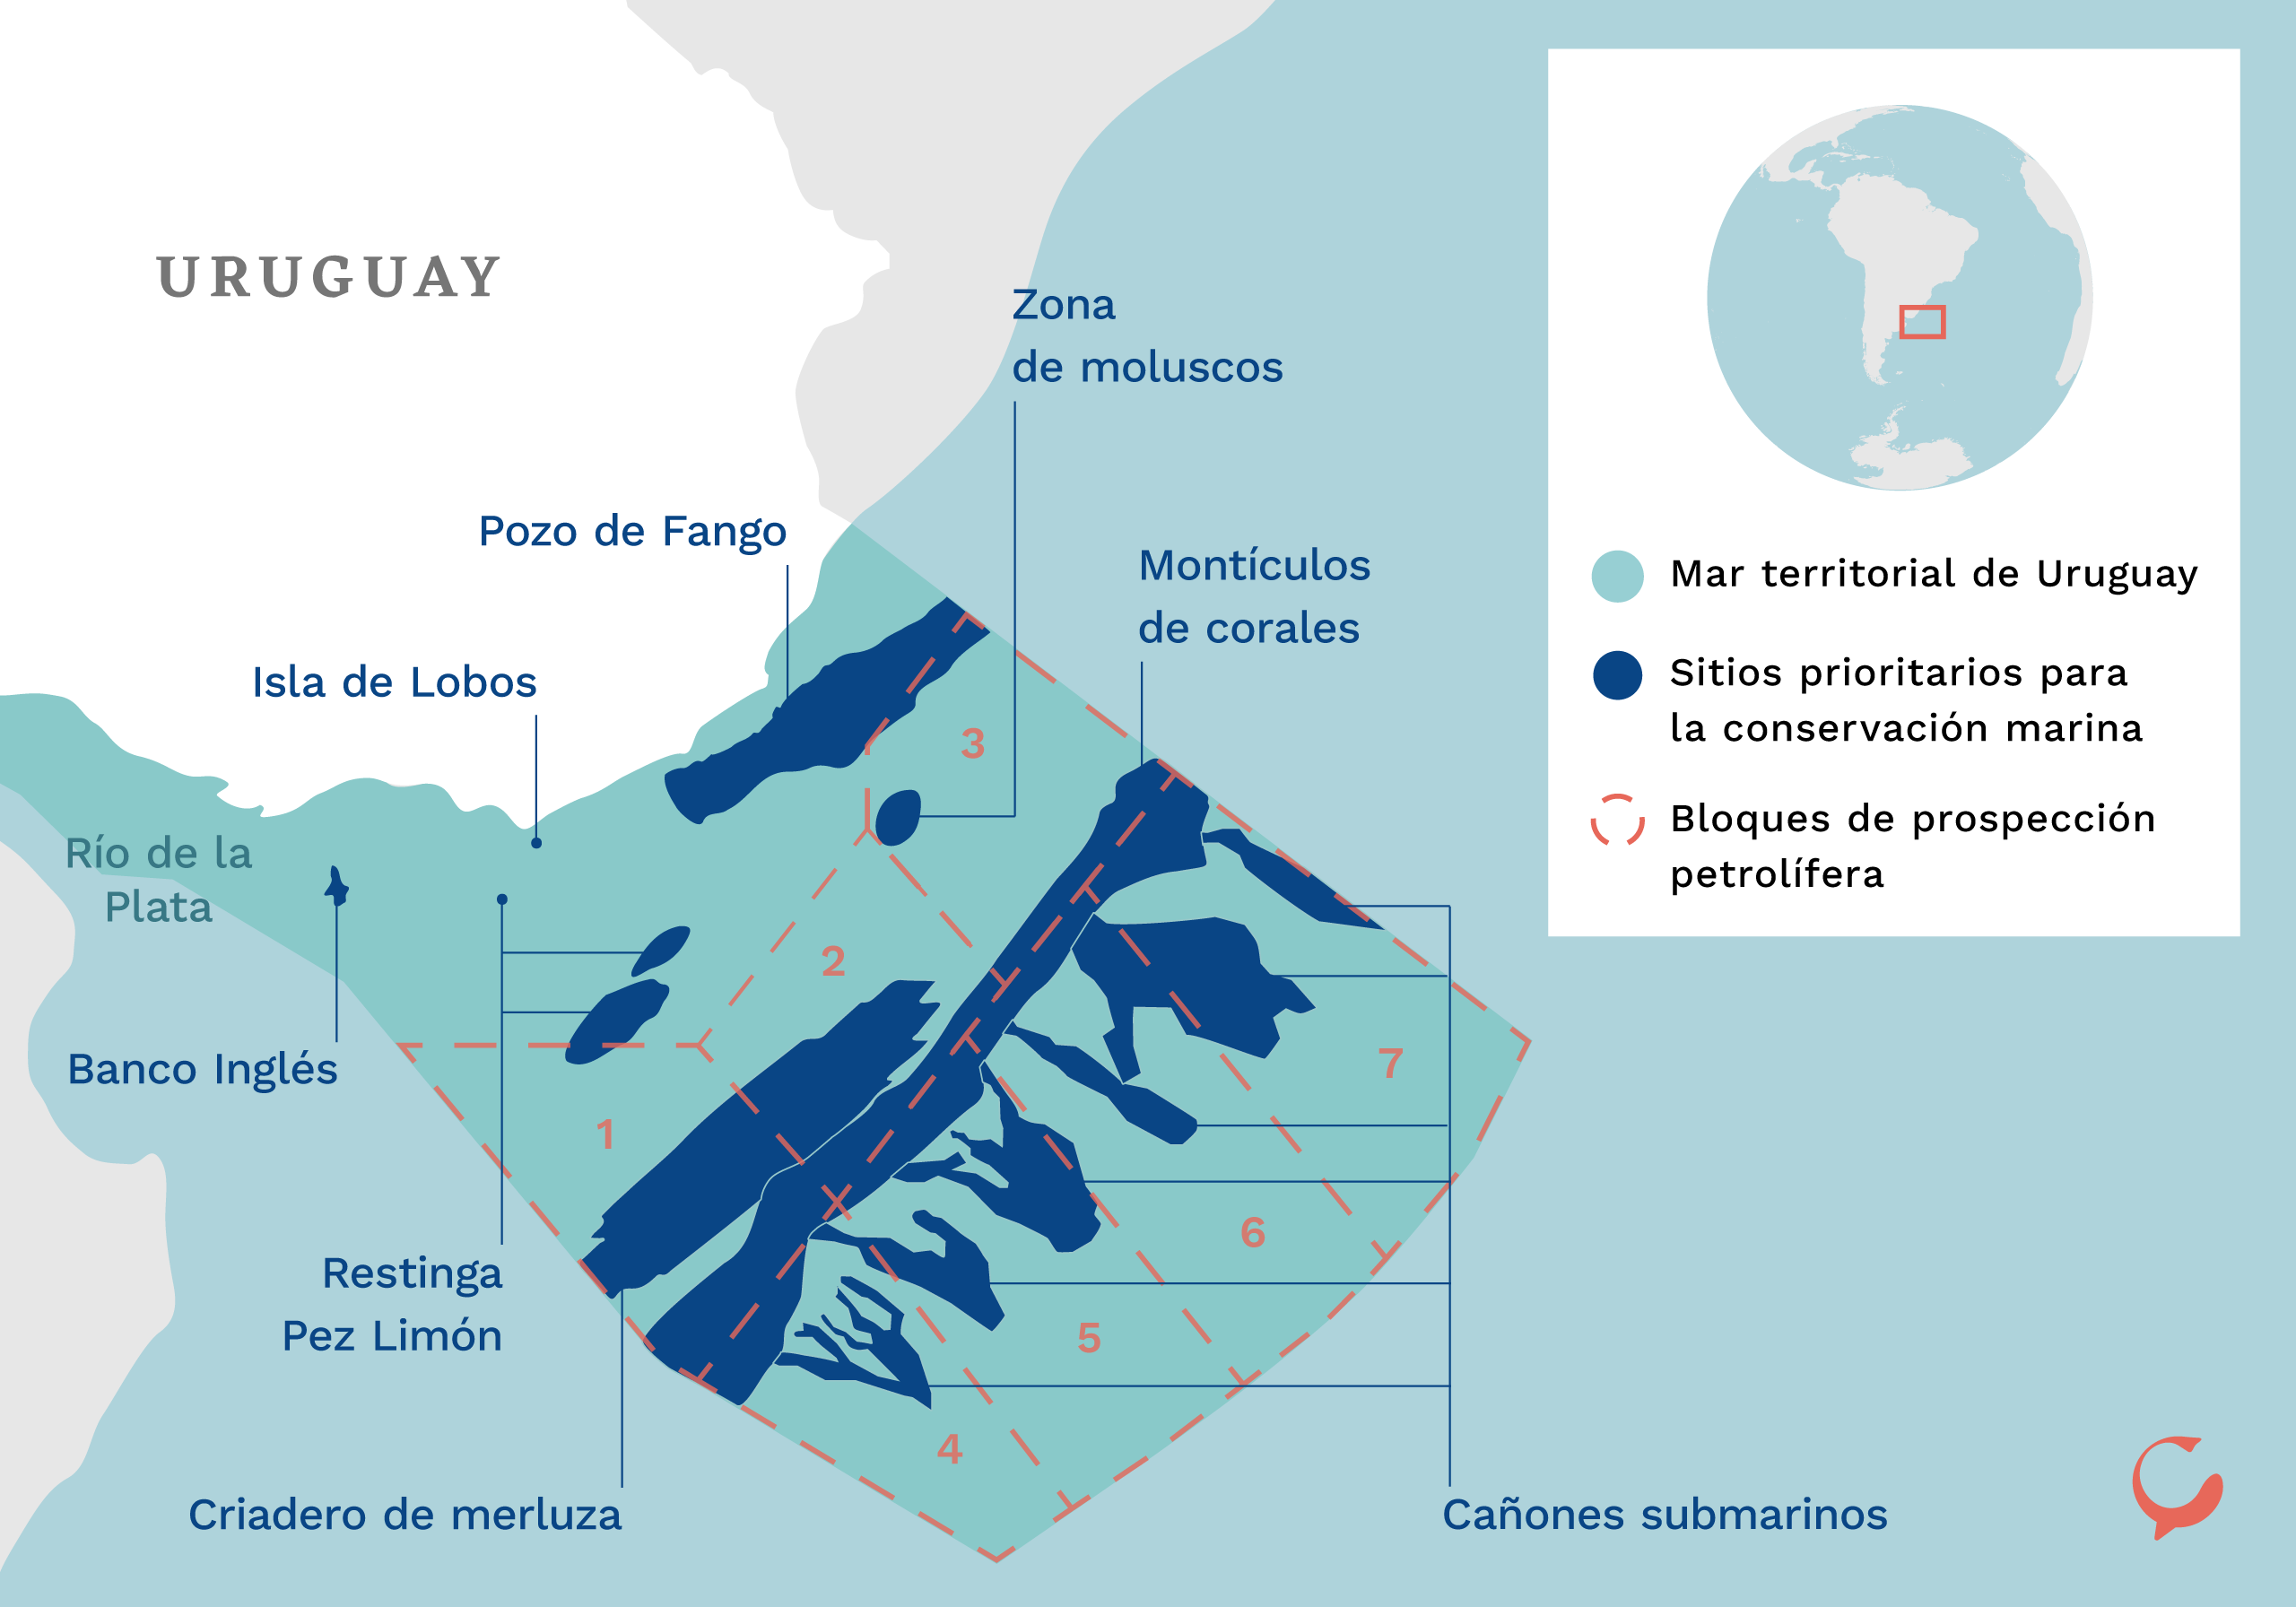 Mapa que muestra las áreas protegidas propuestas en Uruguay